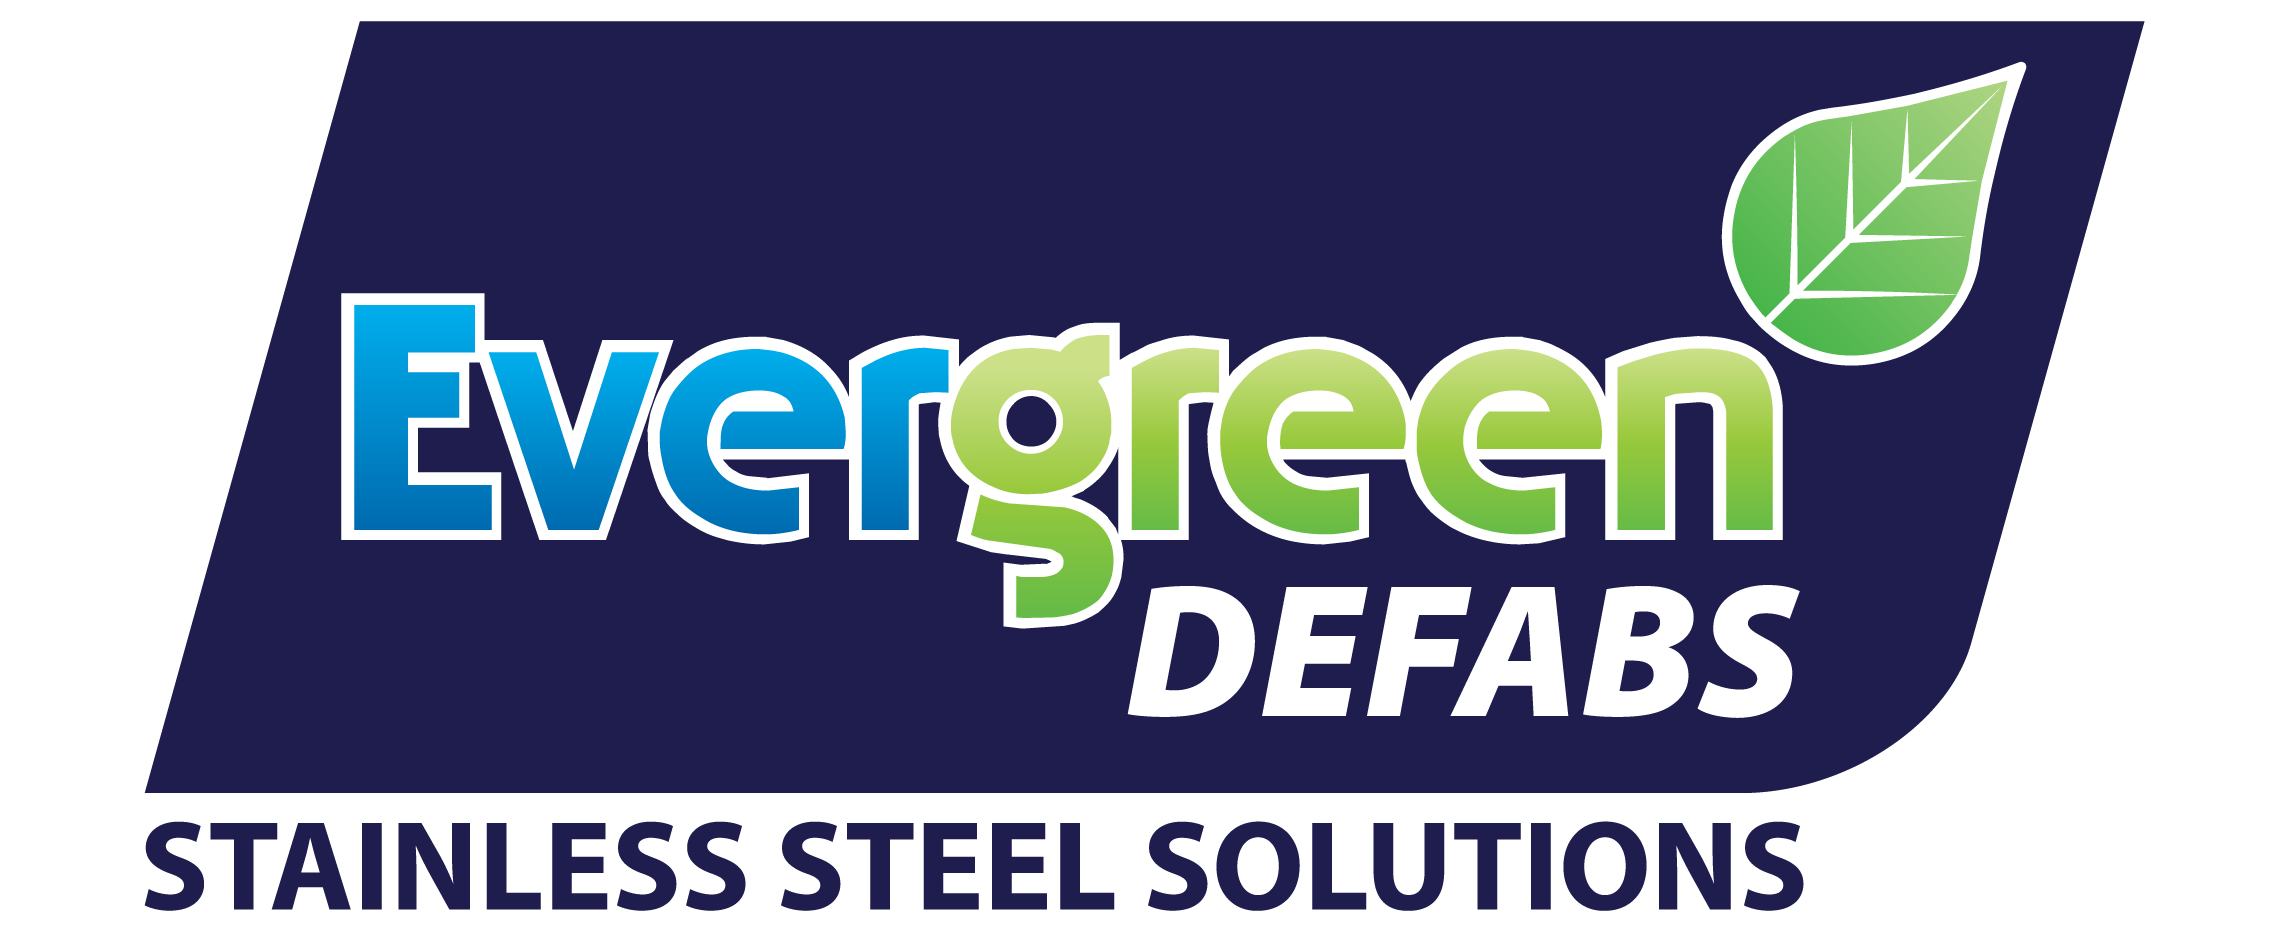 evergreen-defabs-logo-v03